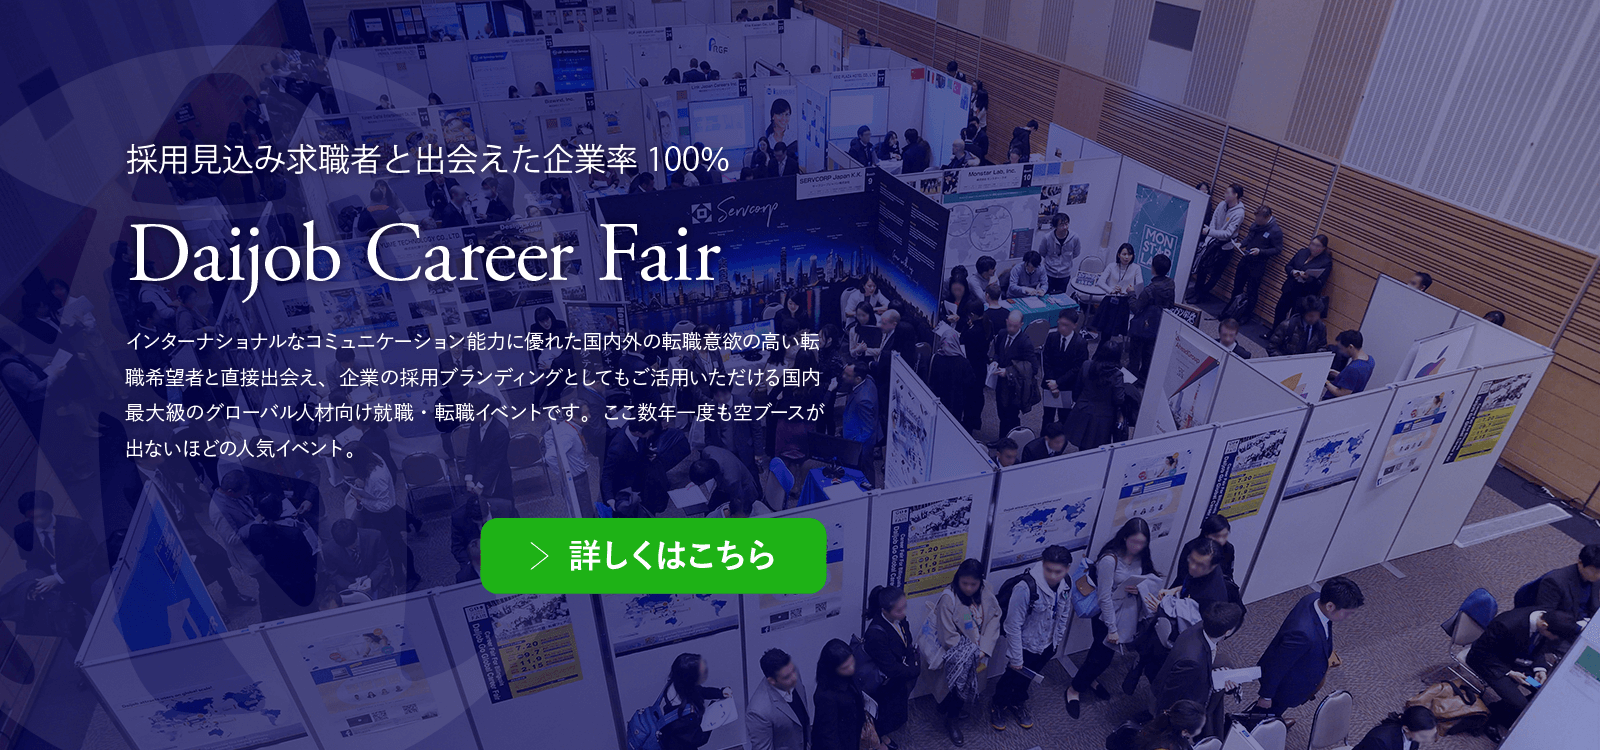 Global Career Fair